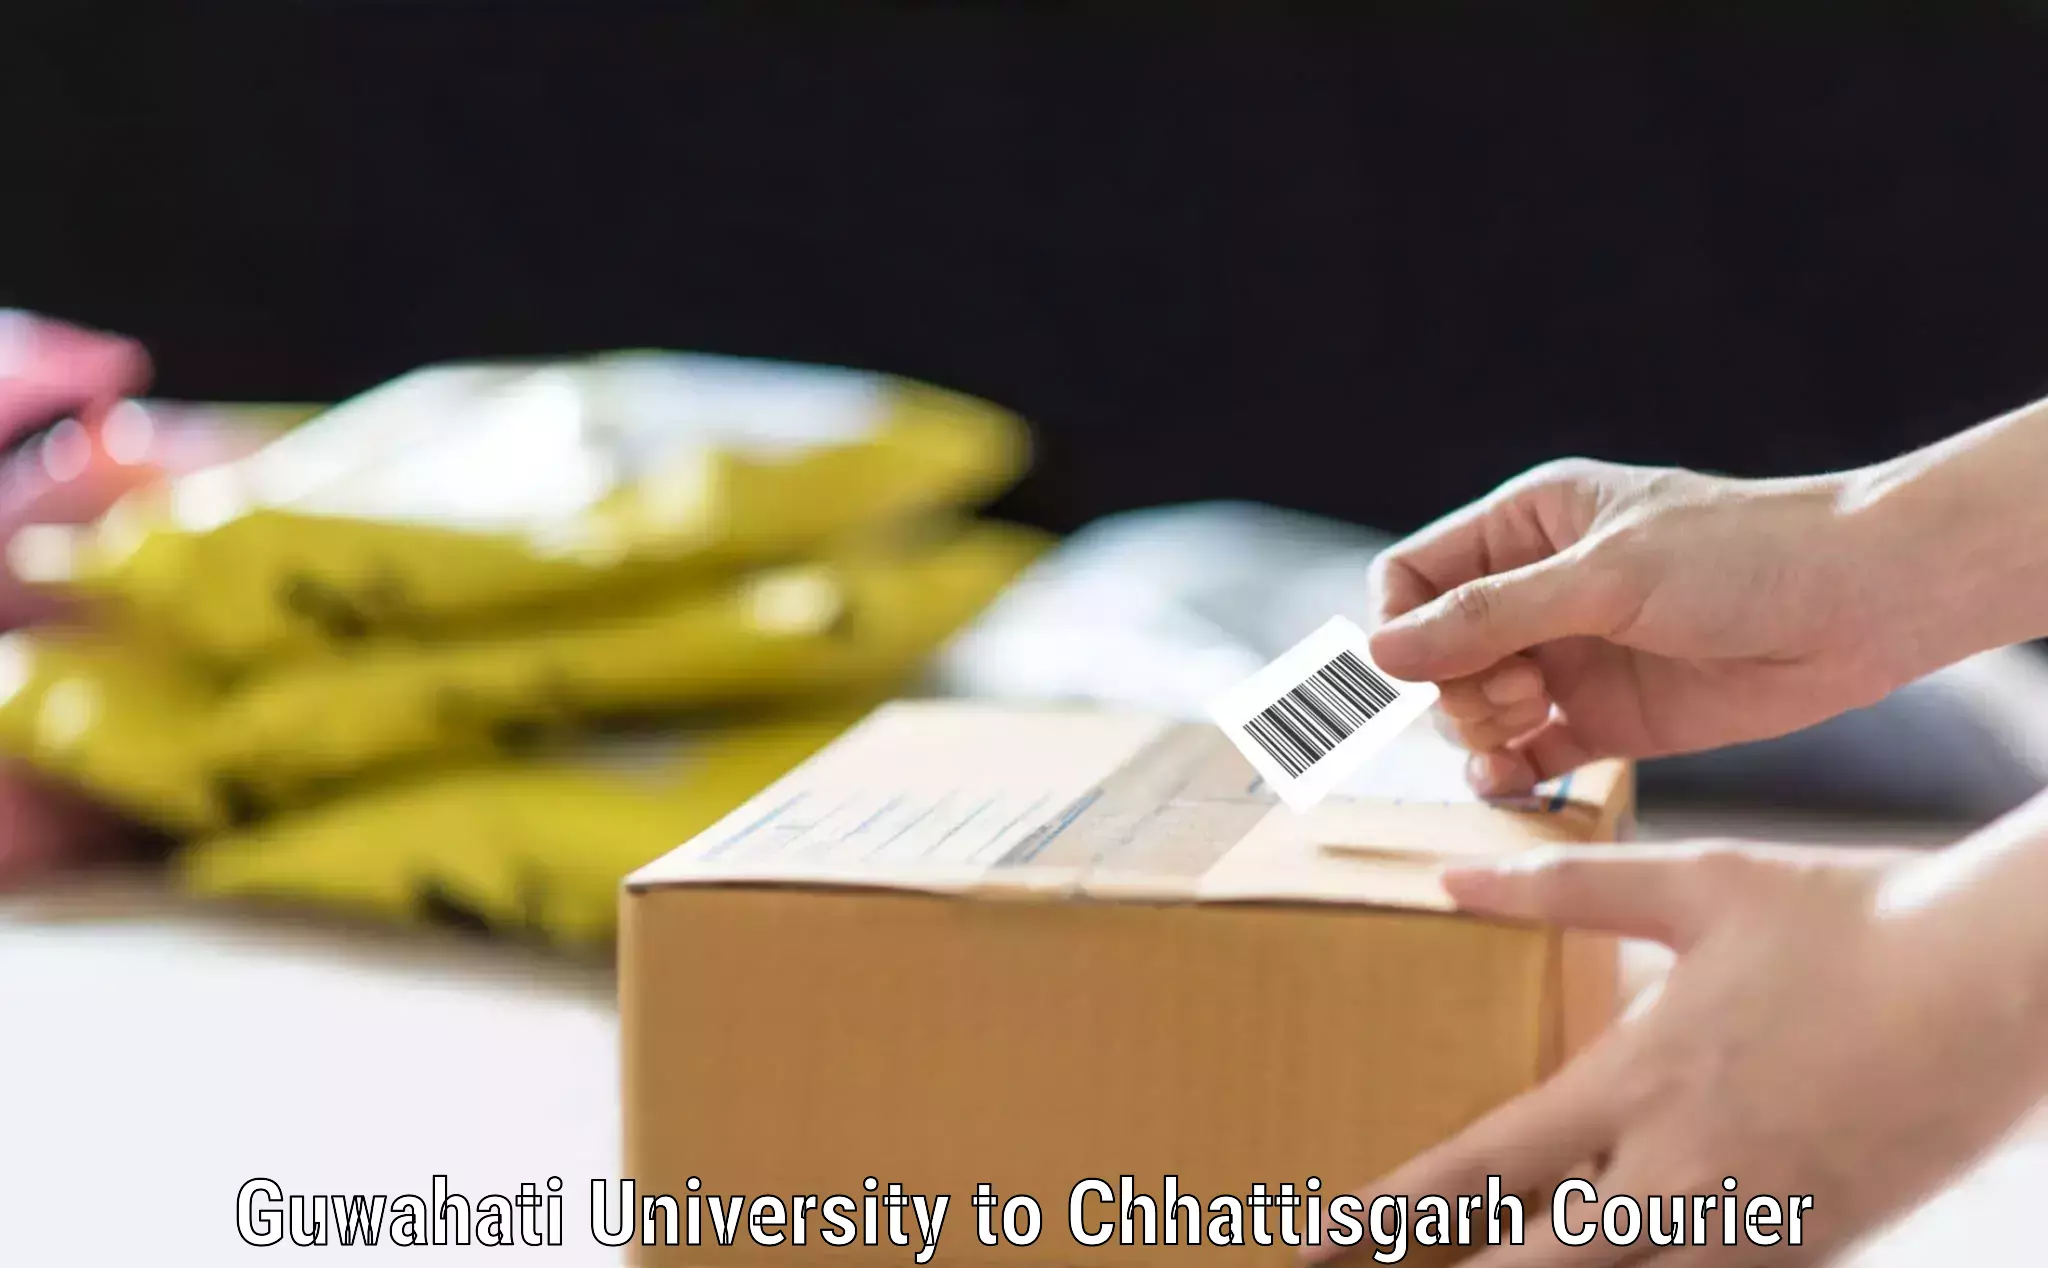 Luggage shipment tracking Guwahati University to Rajnandgaon